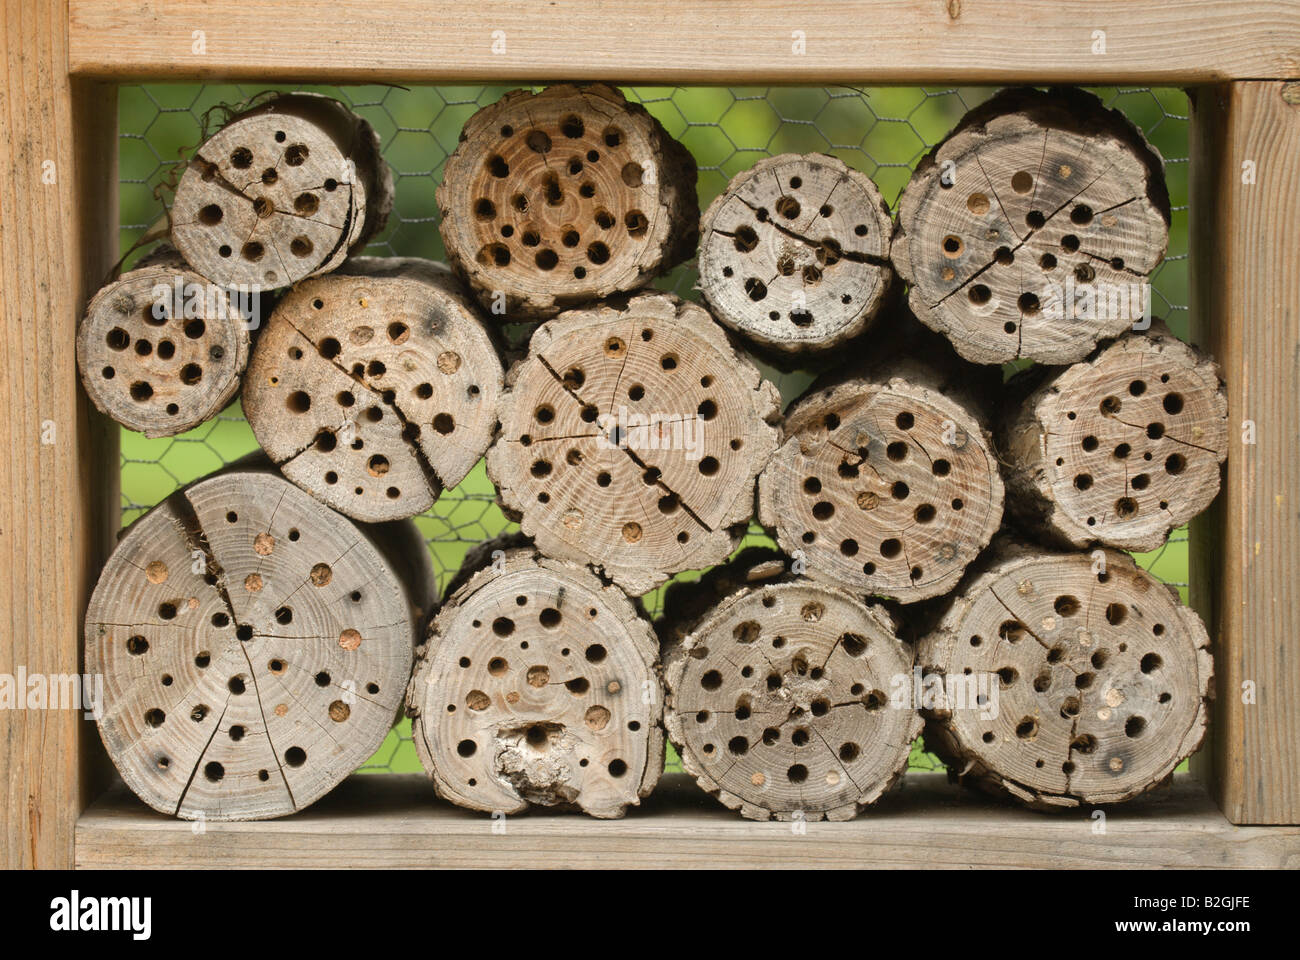 Bruthilfe für solitäre Insekten Bienen Wespen miele essere cootie api honigbiene allevatore brutkasten incubatore Foto Stock